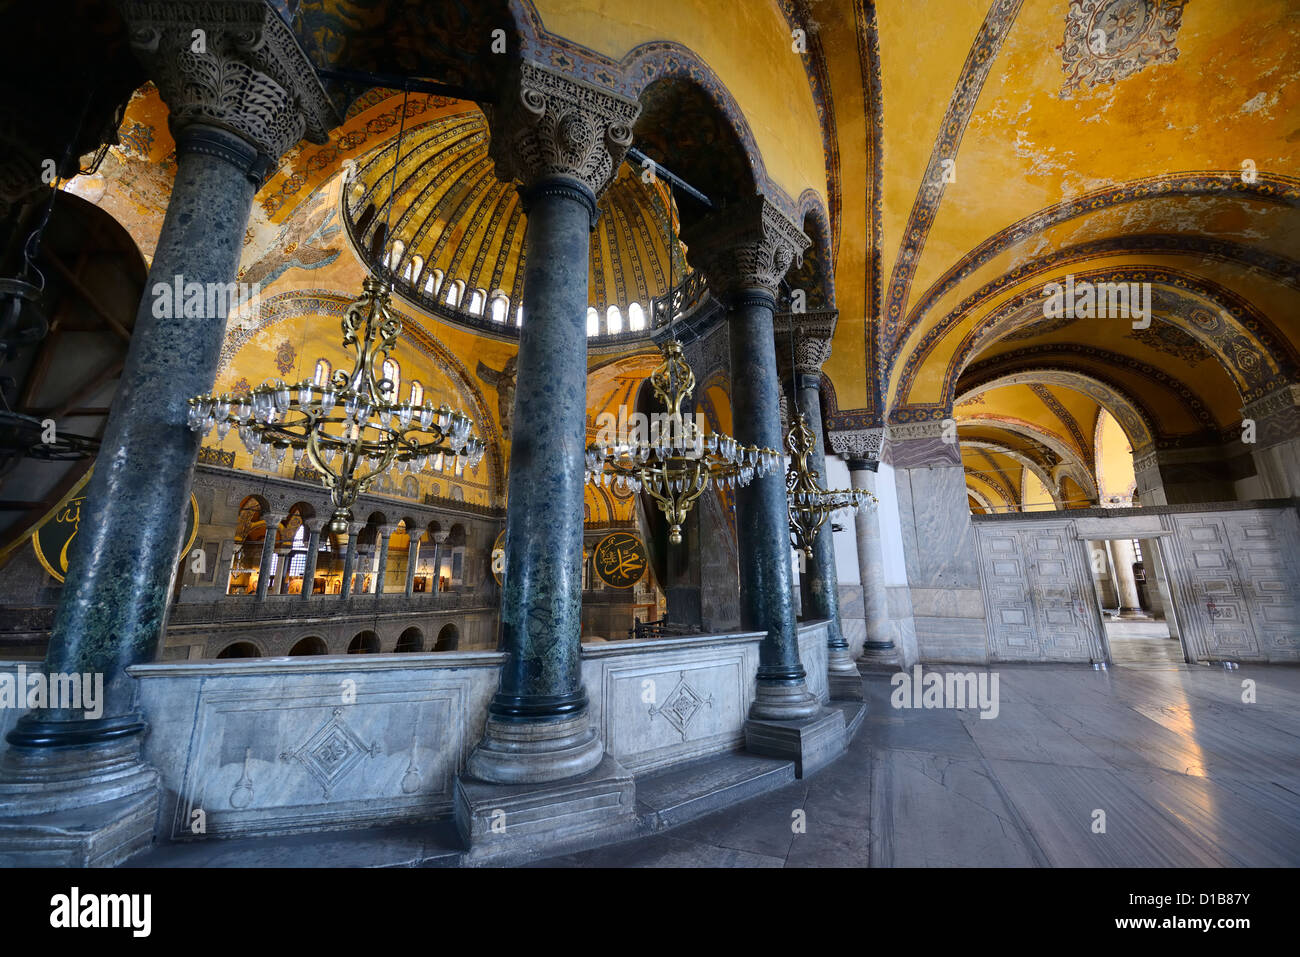 En porte avec piliers sur niveau supérieur de l'Hagia Sophia Istanbul TURQUIE Banque D'Images